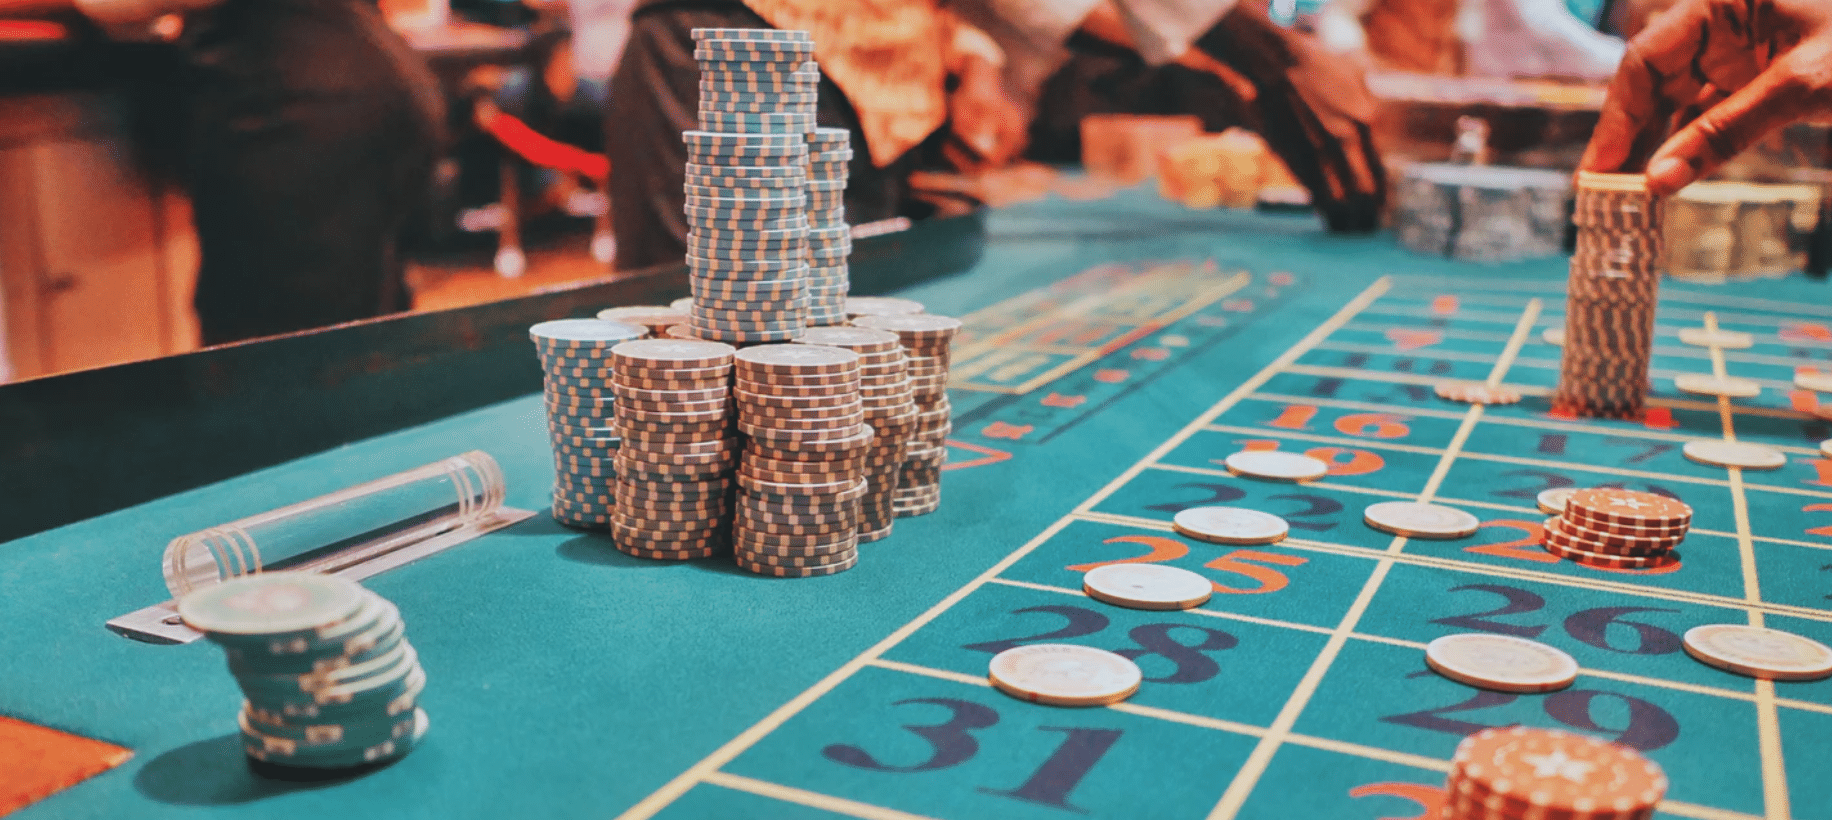 Klassiska casinospel elektronikprylar - 12427